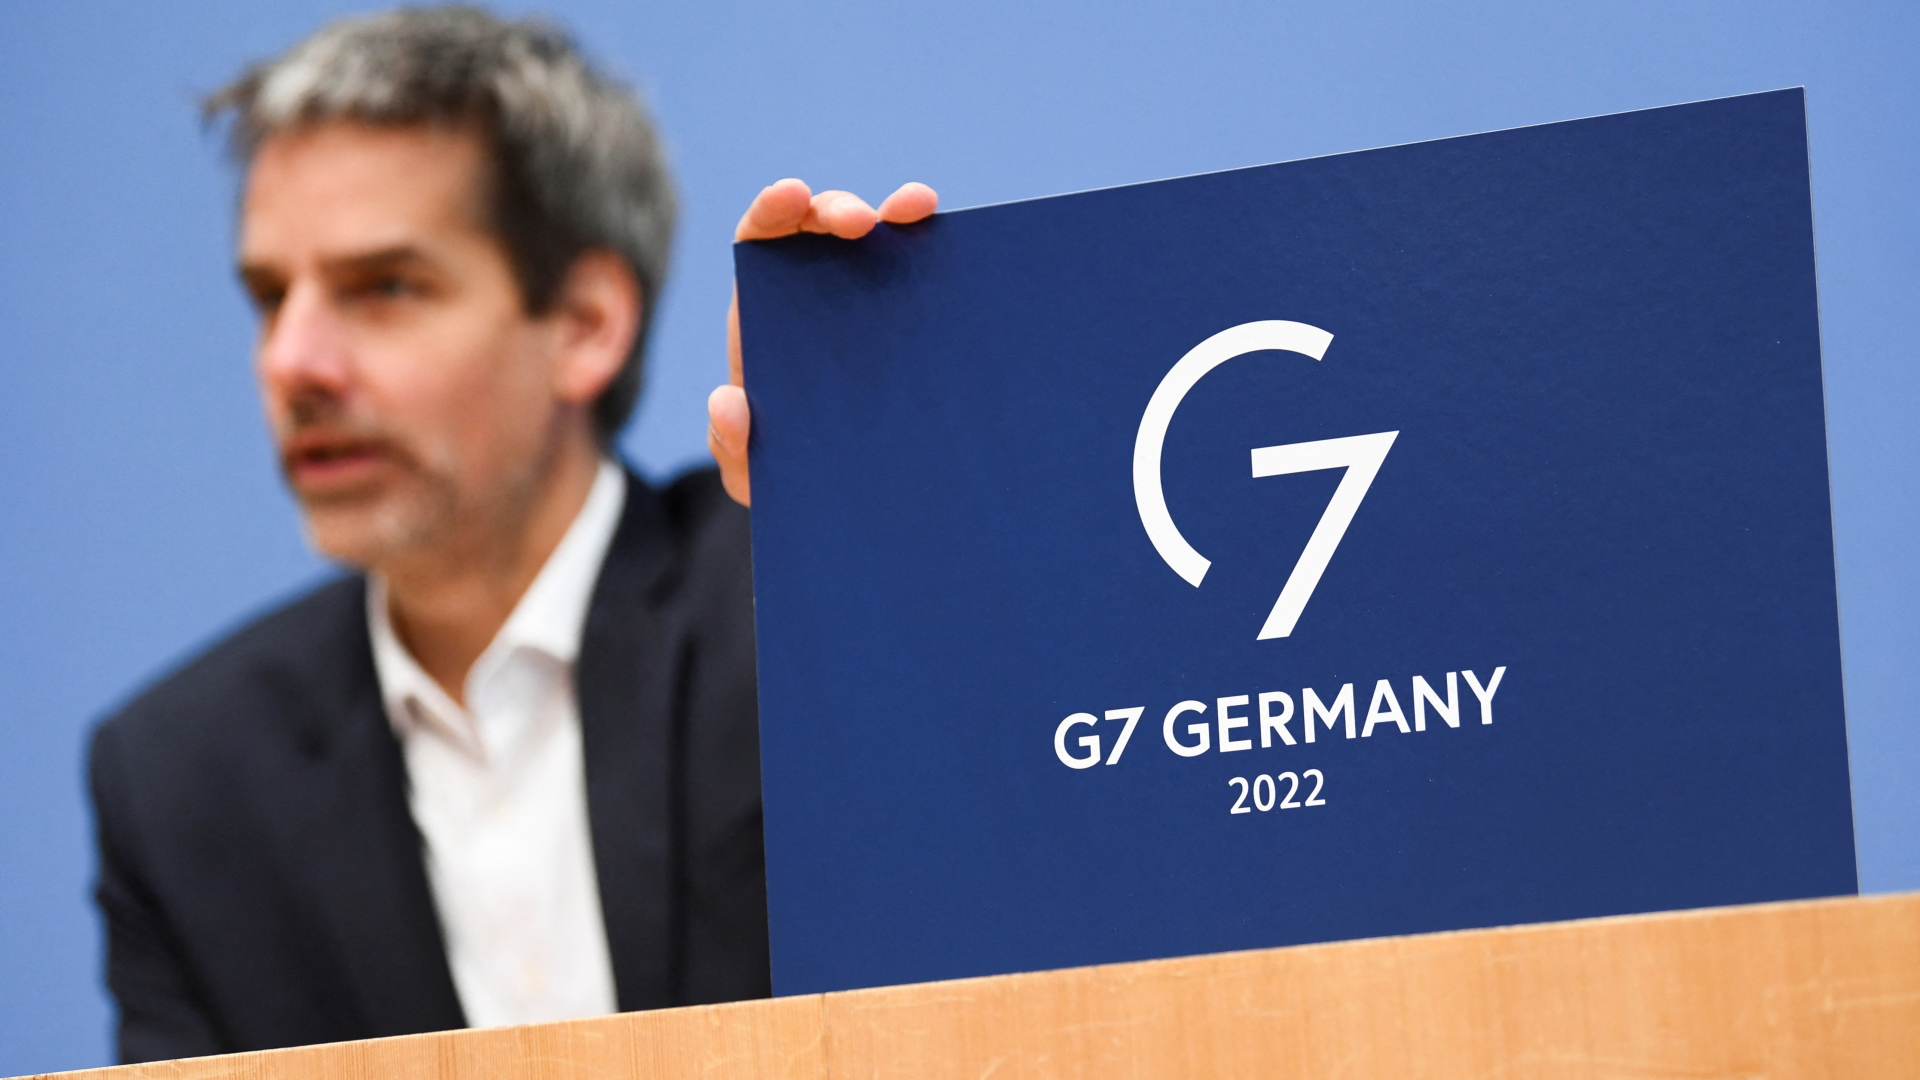 Regierungssprecher Steffen Hebestreit stellt das Logo für den deutschen G7-Vorsitz vor. | REUTERS